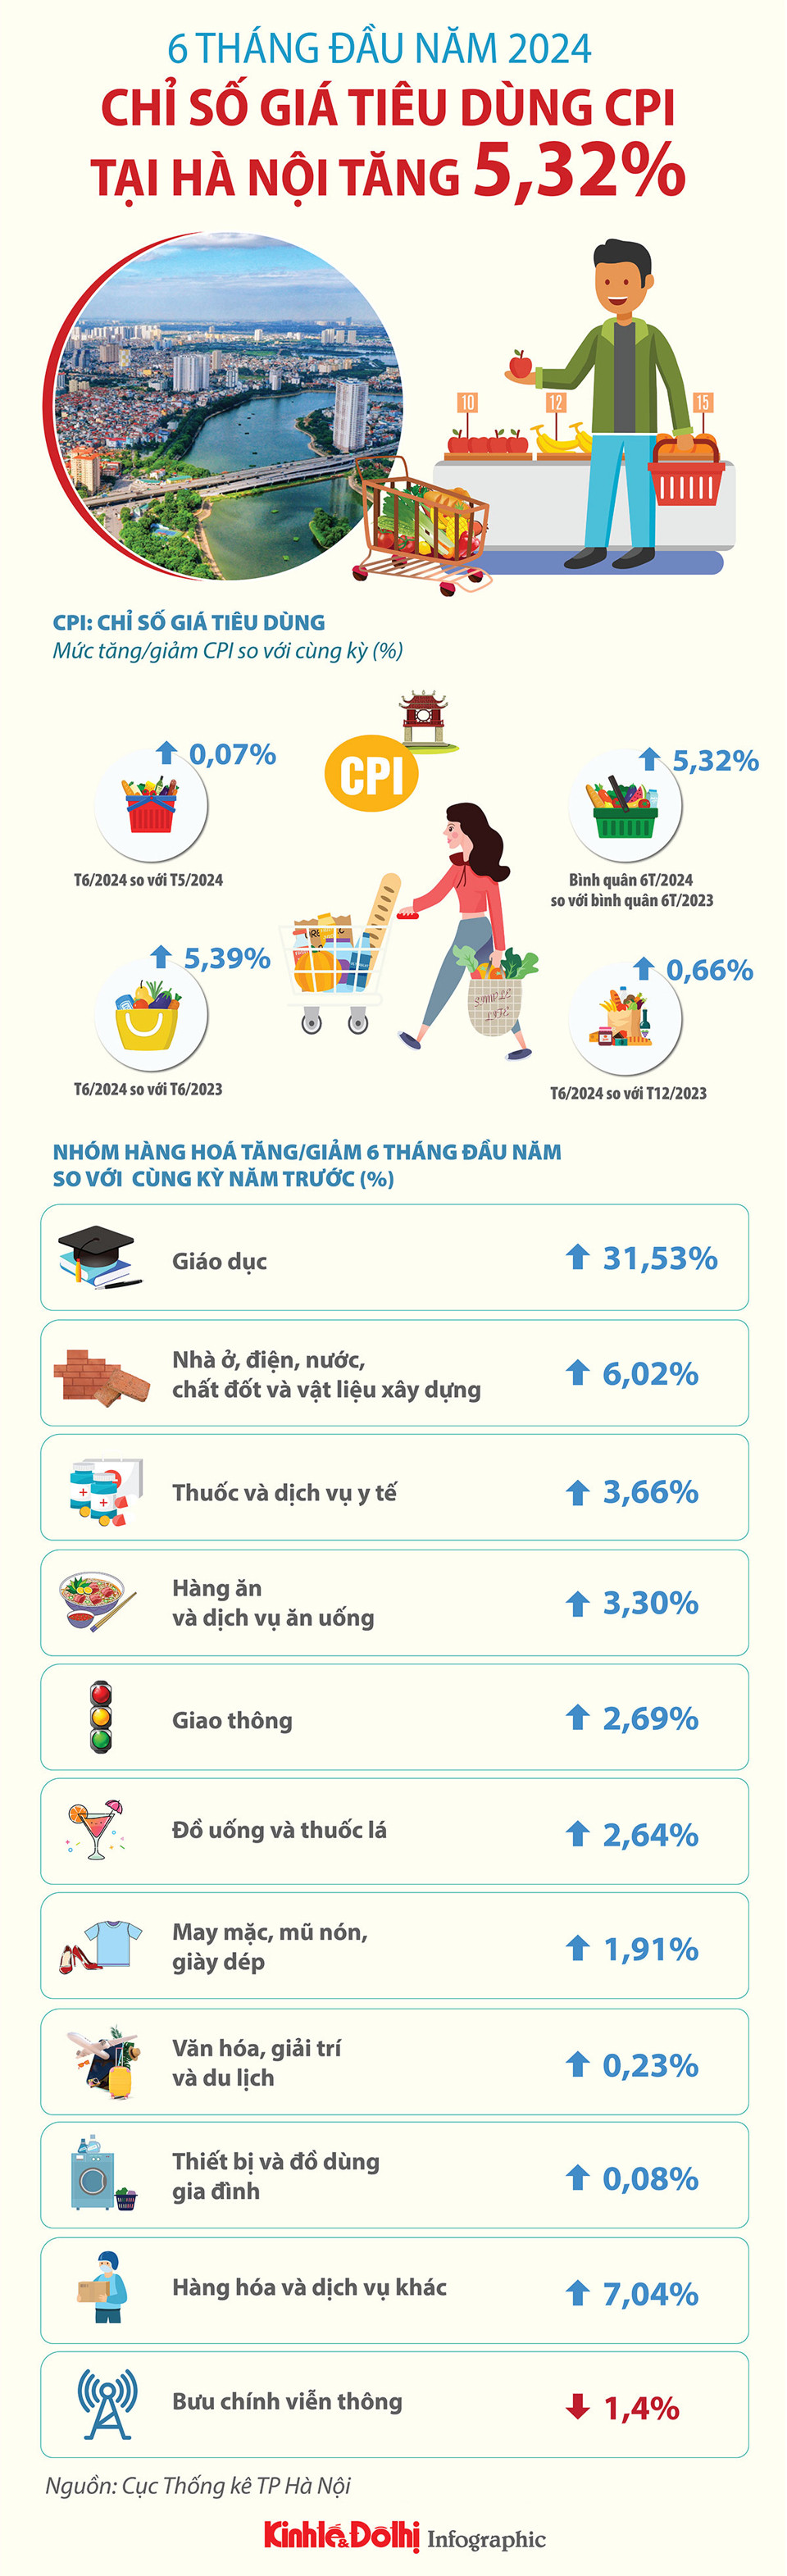 Hà Nội: CPI bình quân 6 tháng đầu năm tăng 5,32% - Ảnh 1